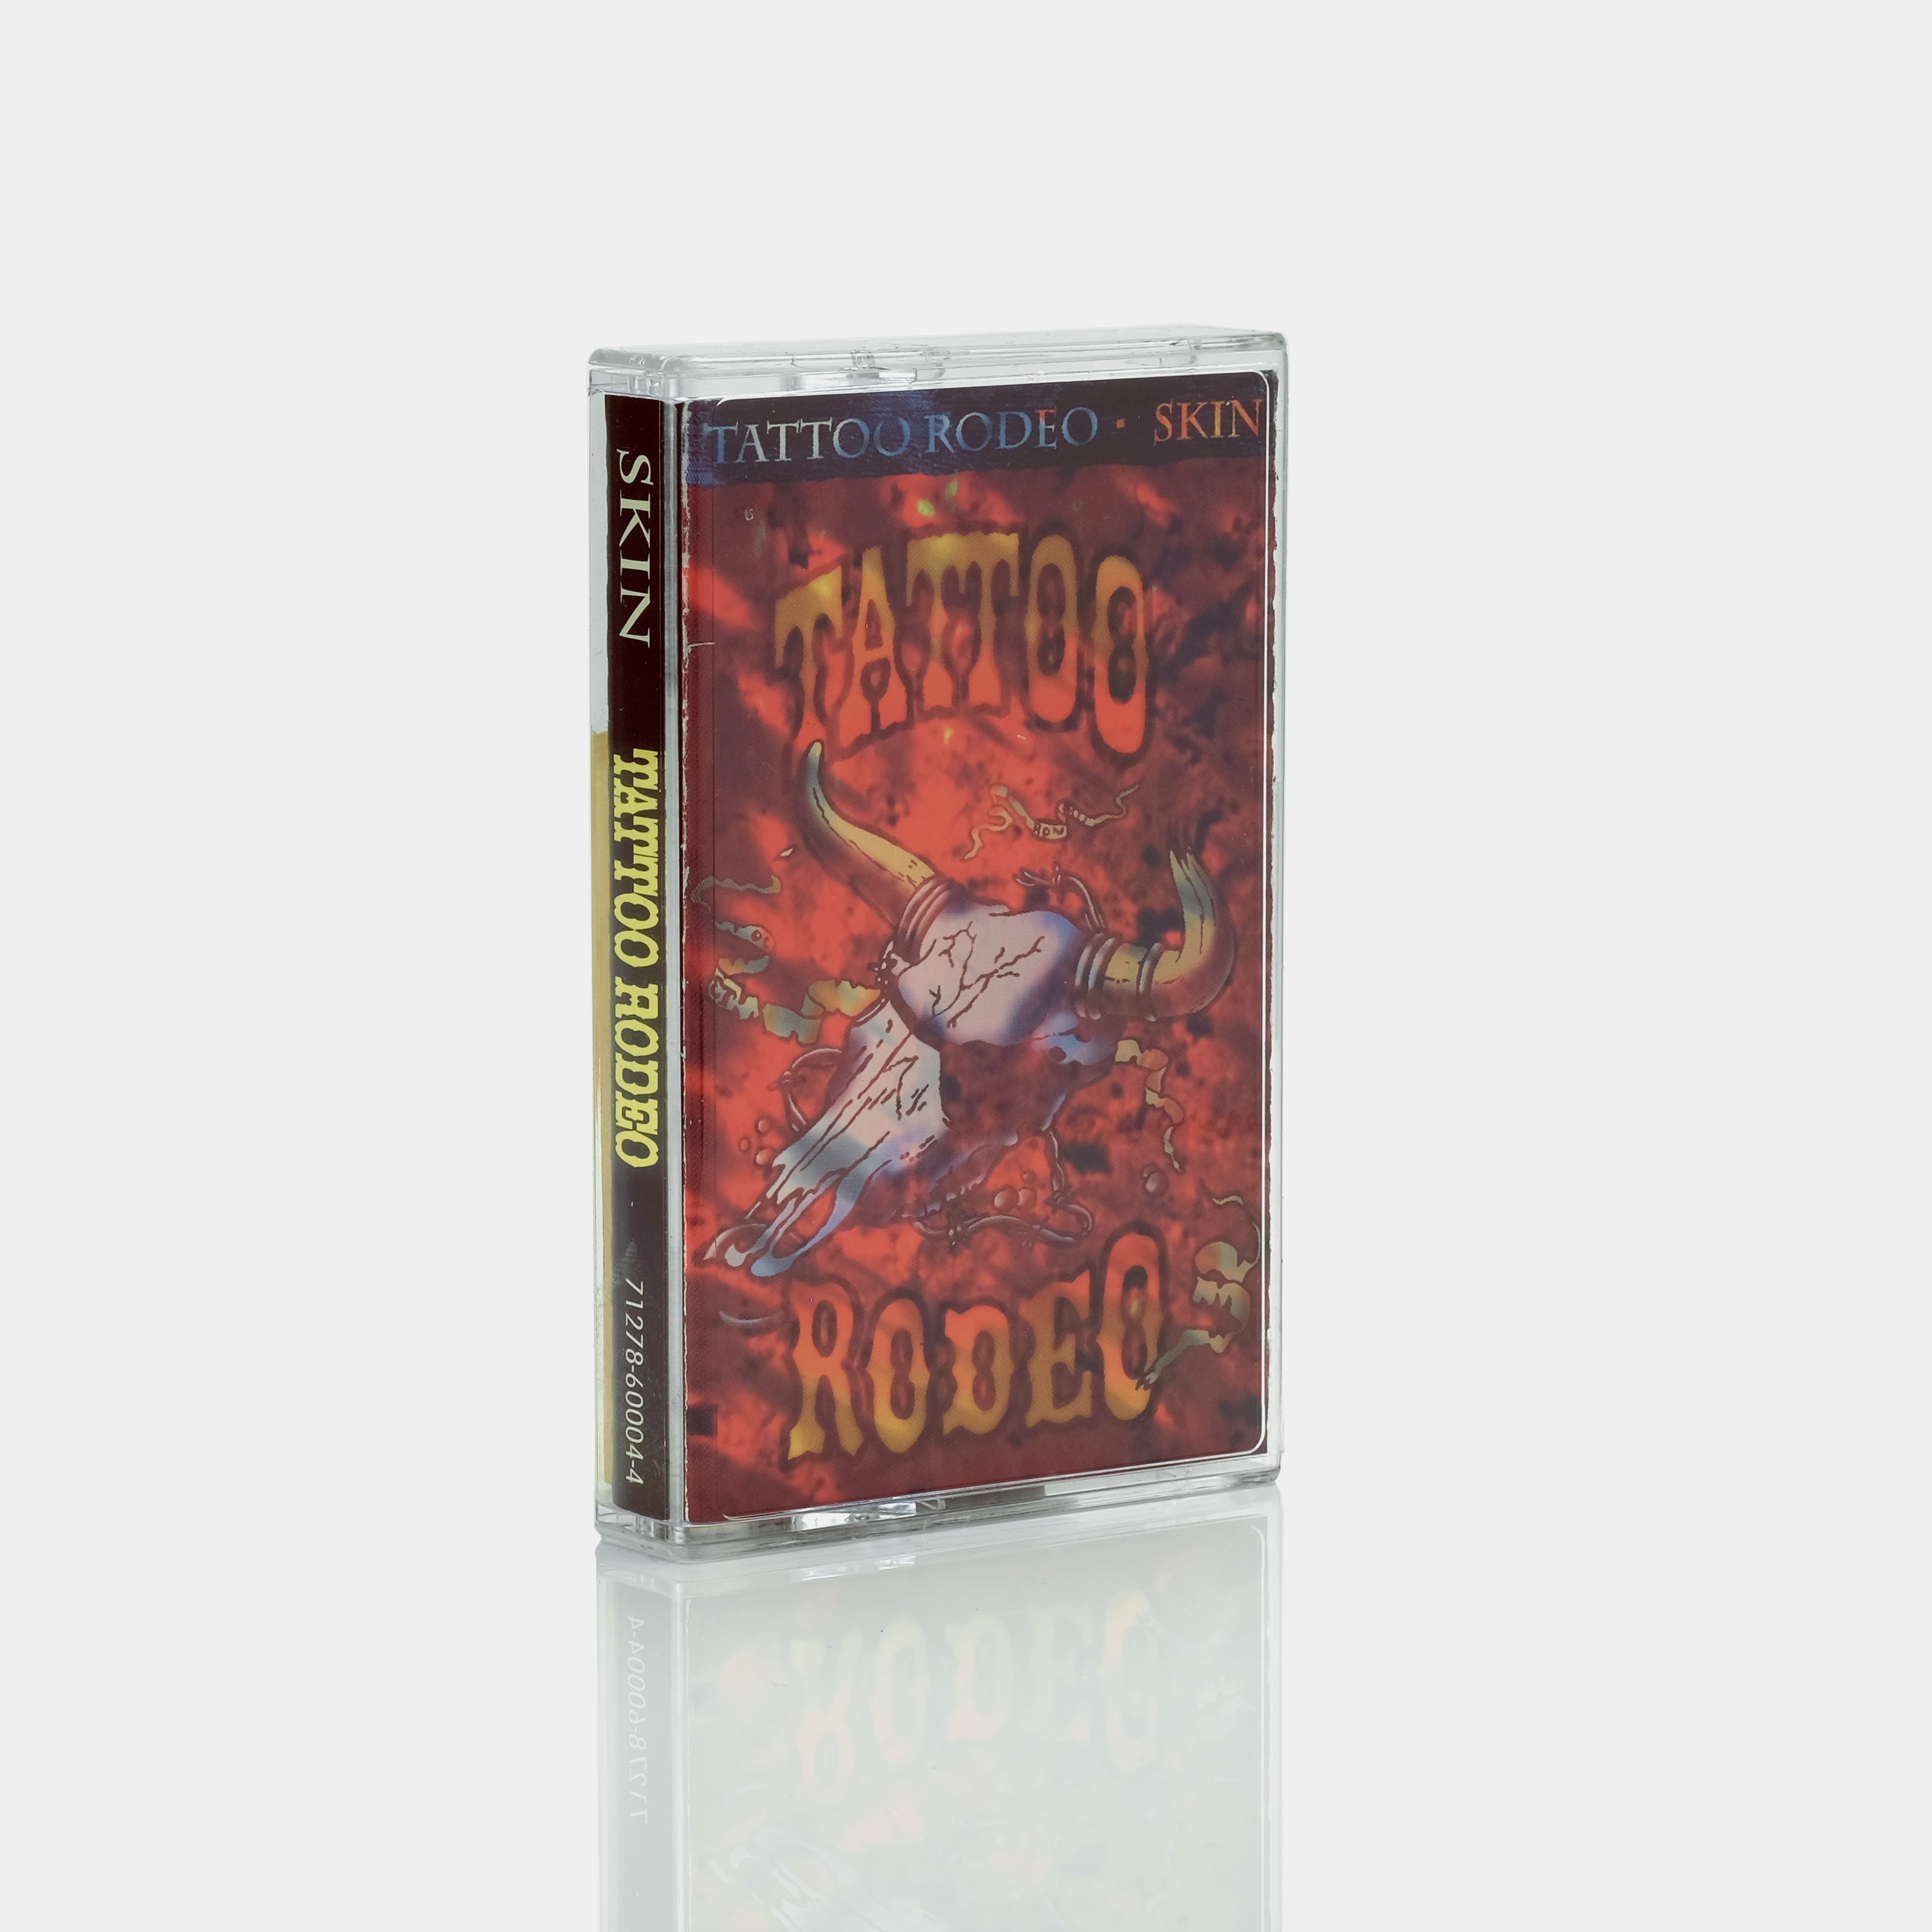 Tattoo Rodeo - Skin Cassette Tape